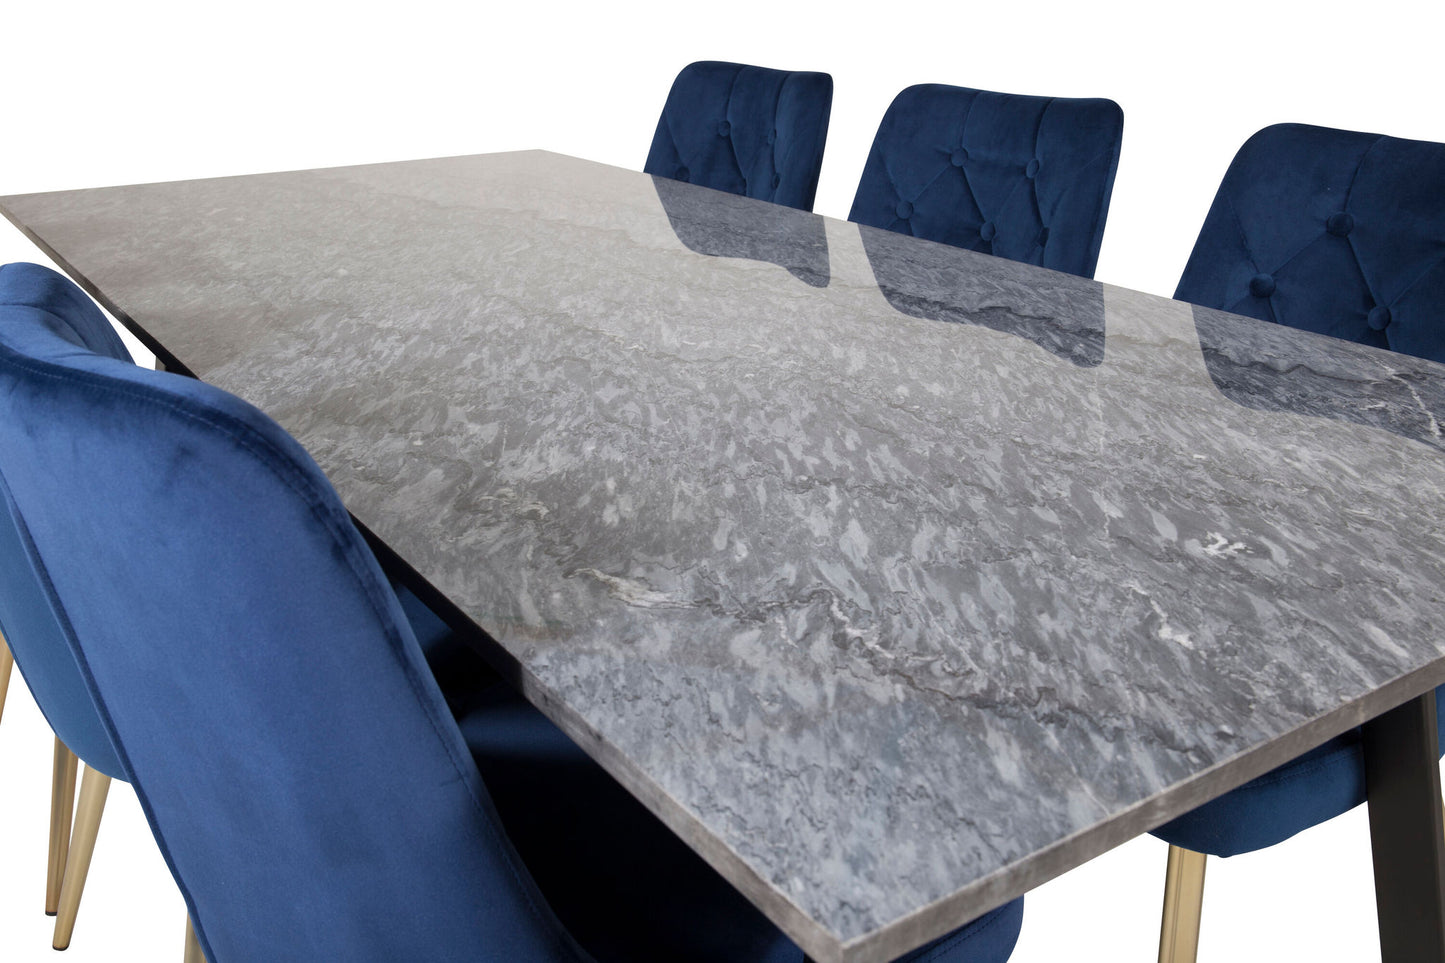 Estelle - Spisebord, 200*90 Grå Marmor / Sorte ben - velour Deluxe Stol - Blå/Mat Messing Leg